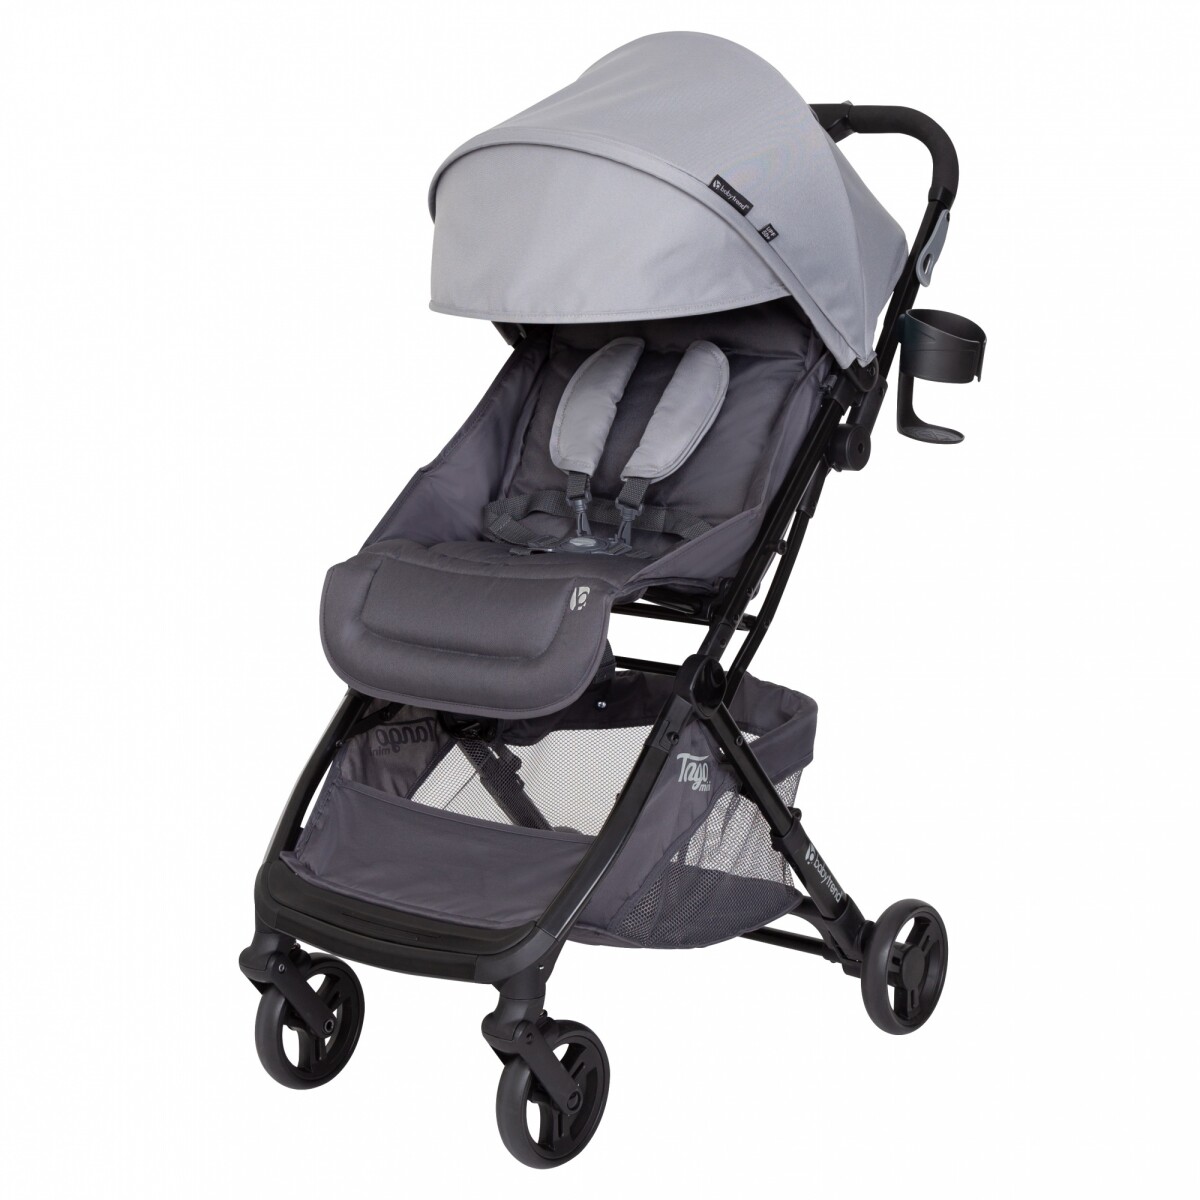 Coche Babytrend Tango Mini Stroller Compact Modelo Sedona 